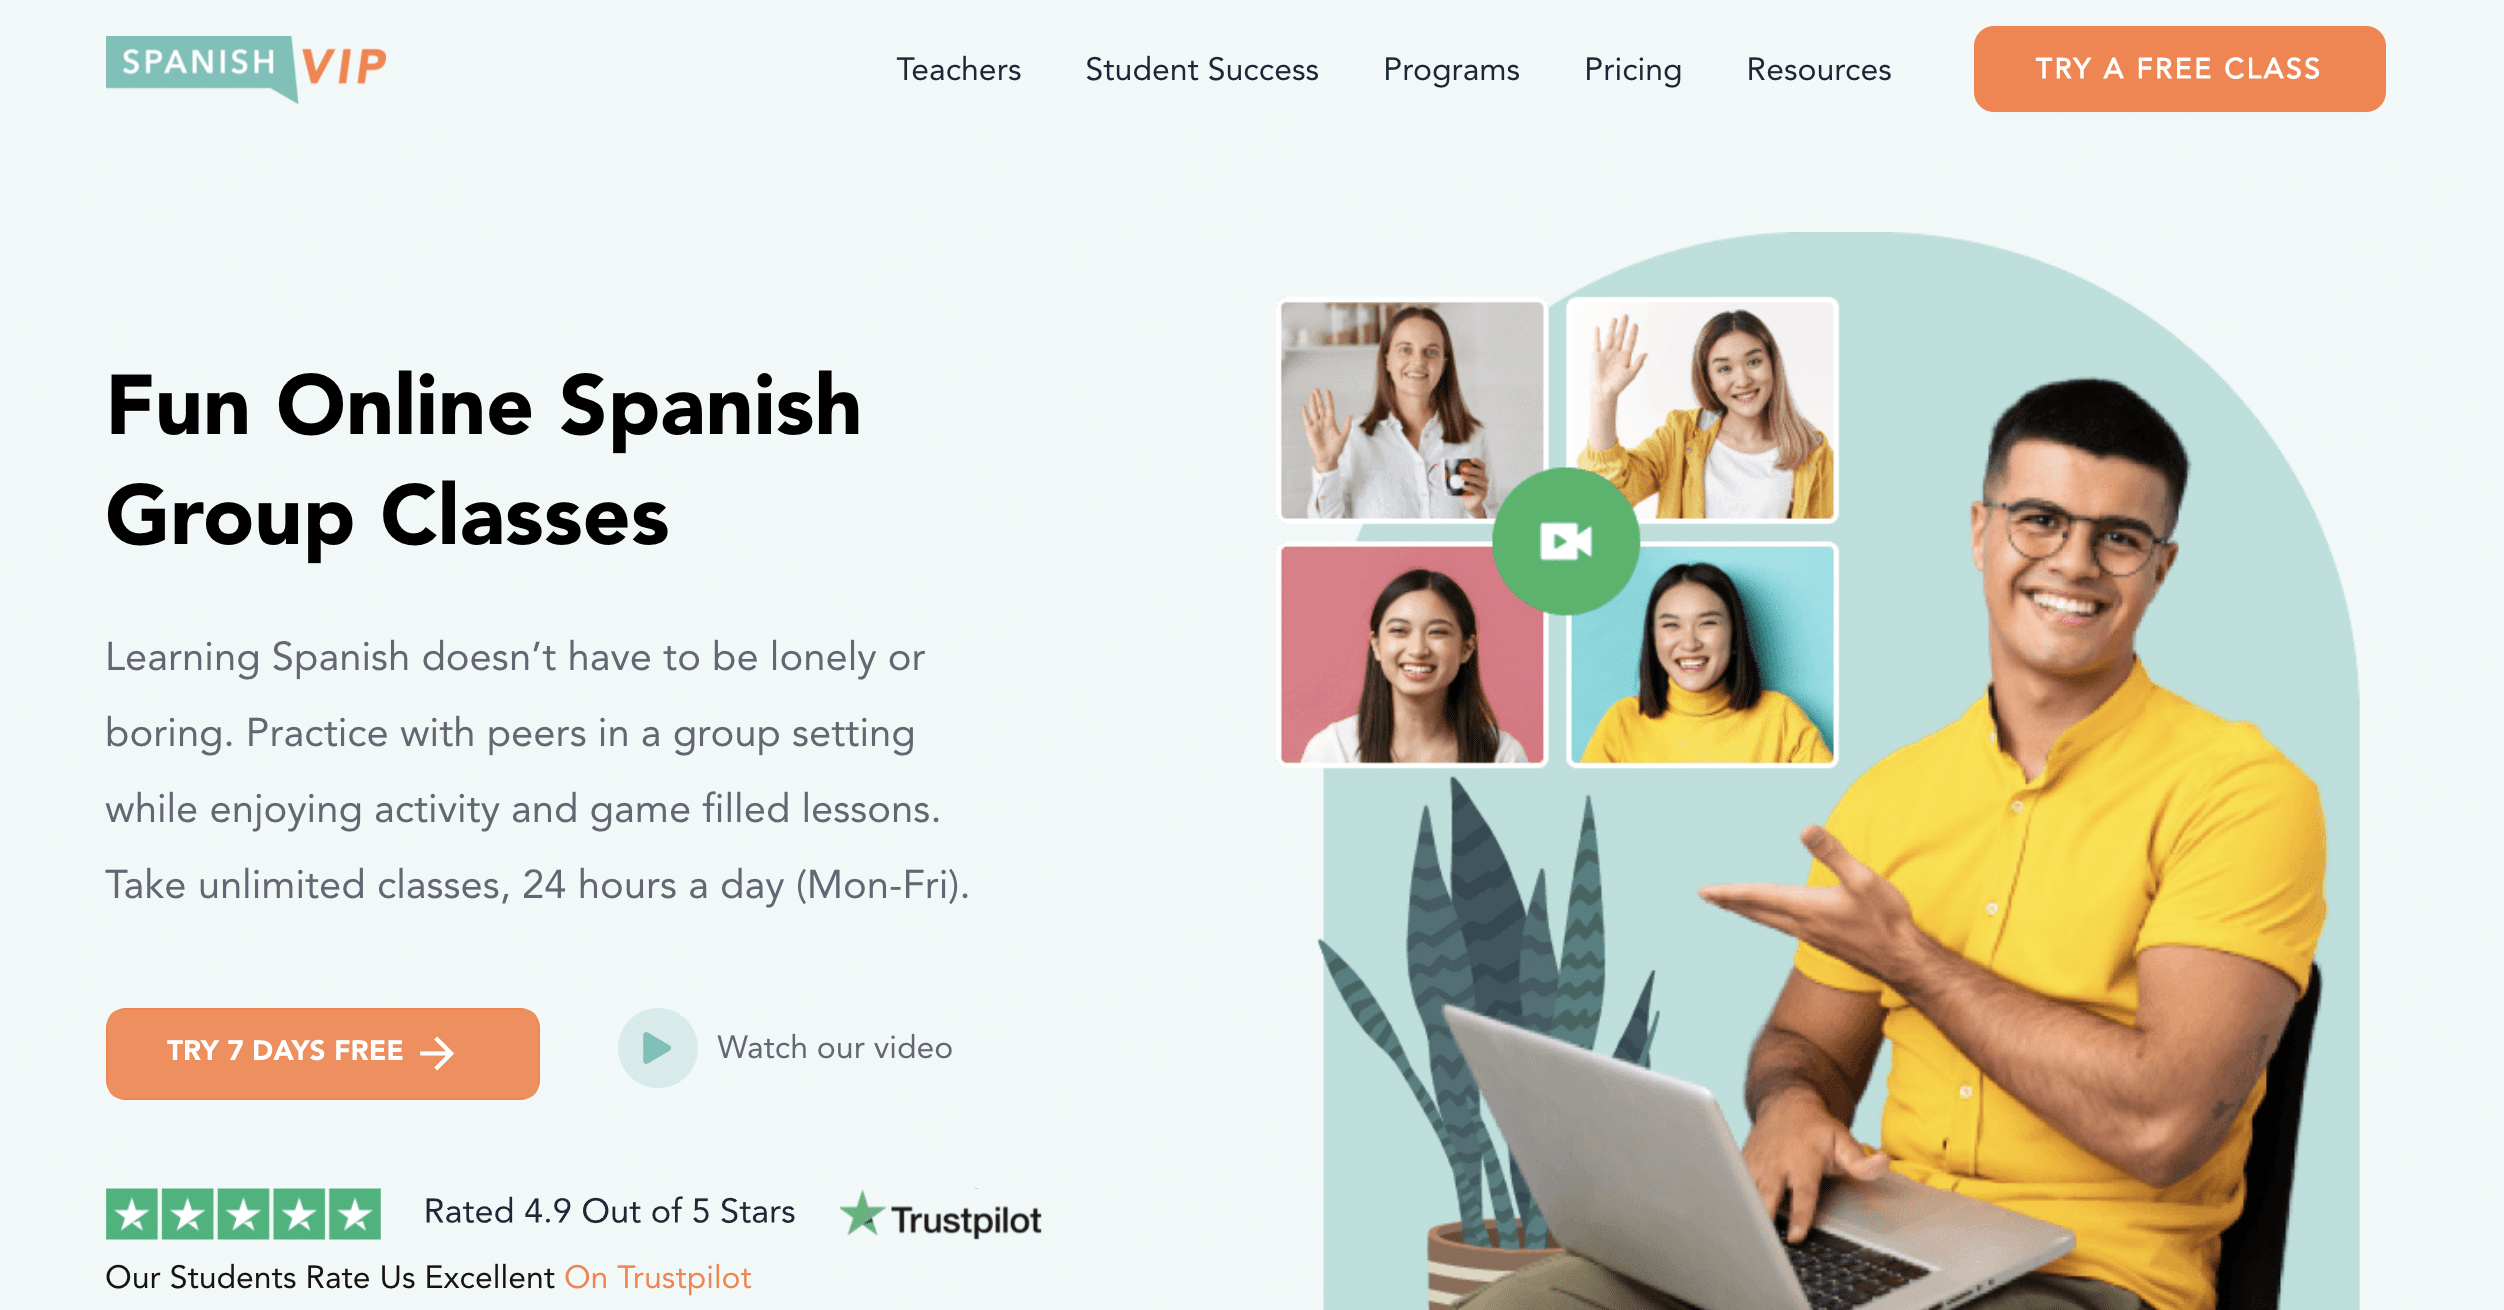 Spanish VIP online Spanish classes screenshot